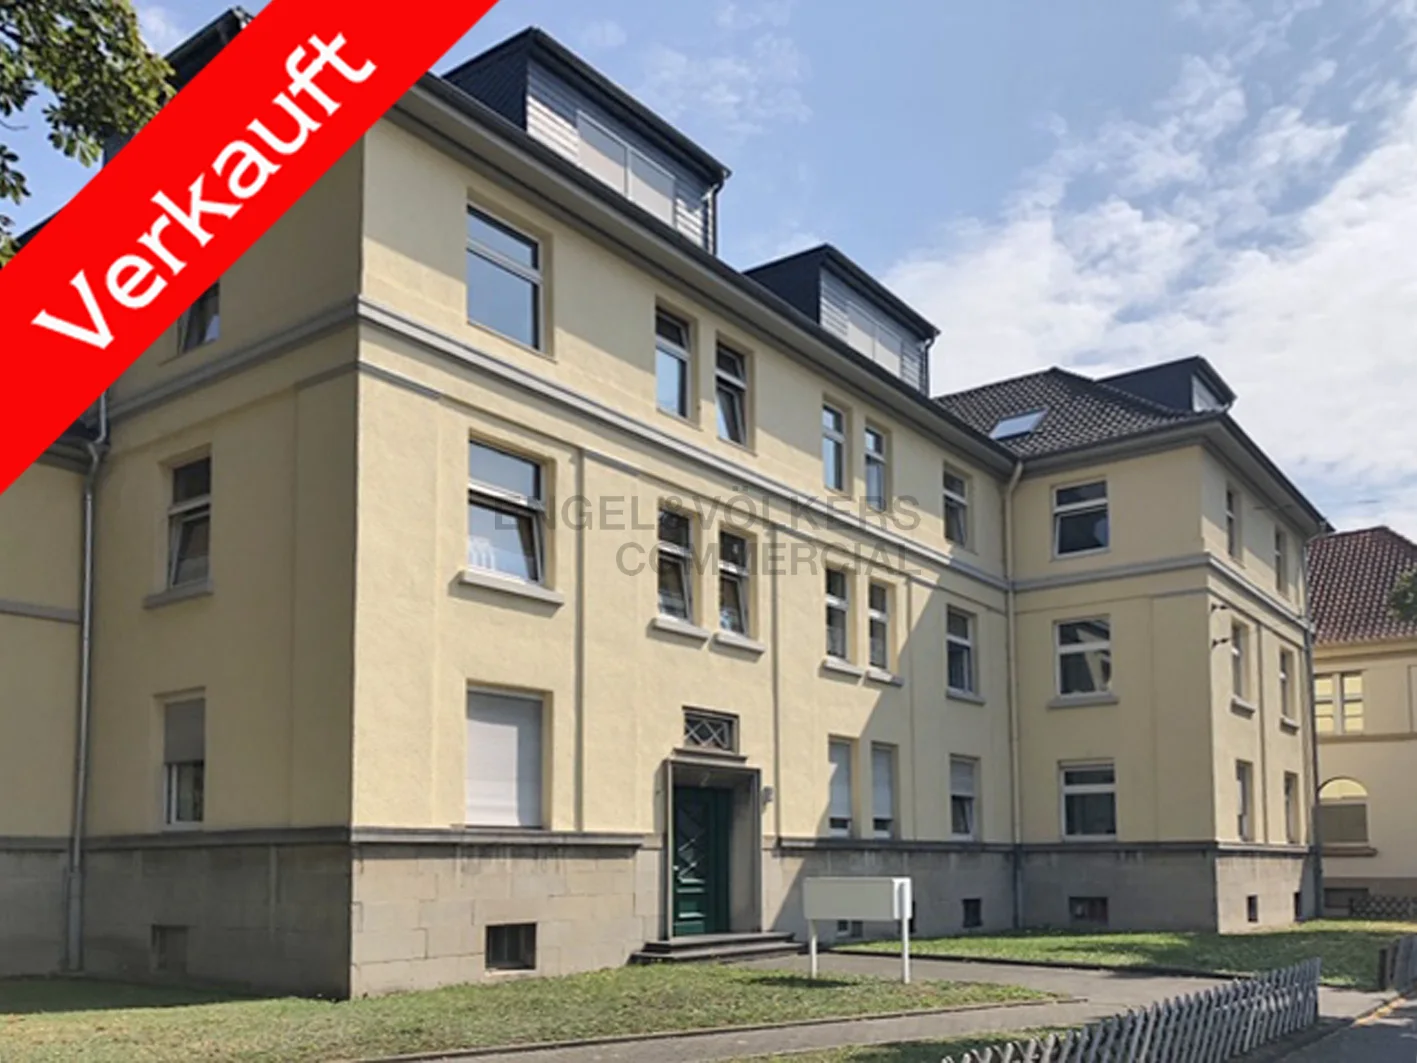 Verkauft - Modernisiertes und freistehendes Gründerzeithaus in Bonn-Castell!